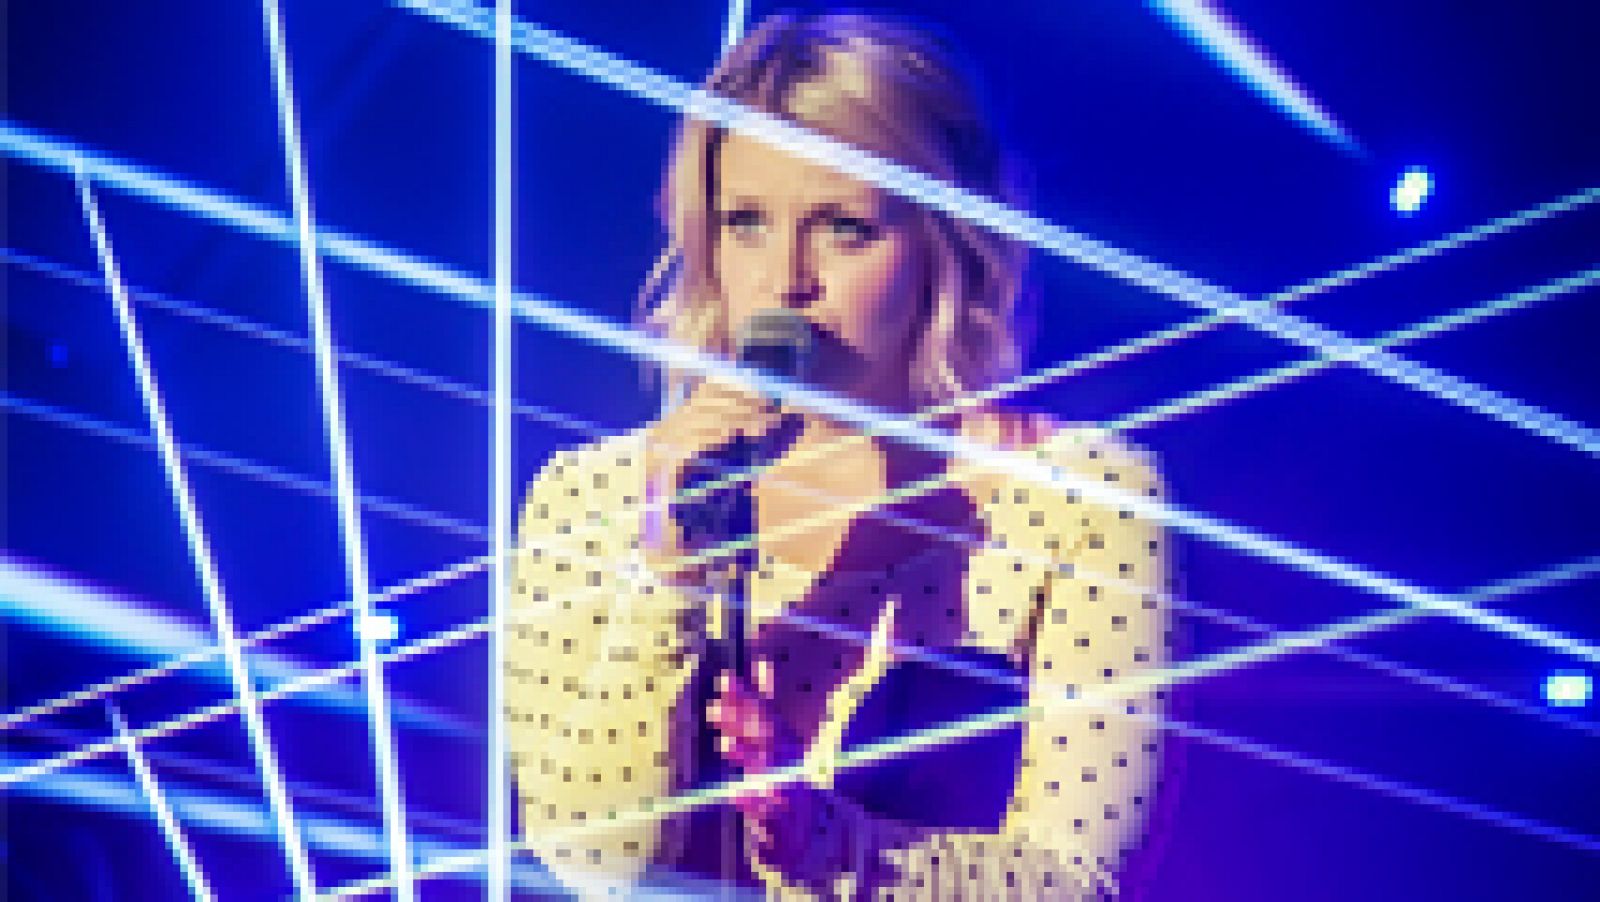 Eurovisión 2017 - Norma John (Finlandia) interpreta su canción "Blackbird" en directo